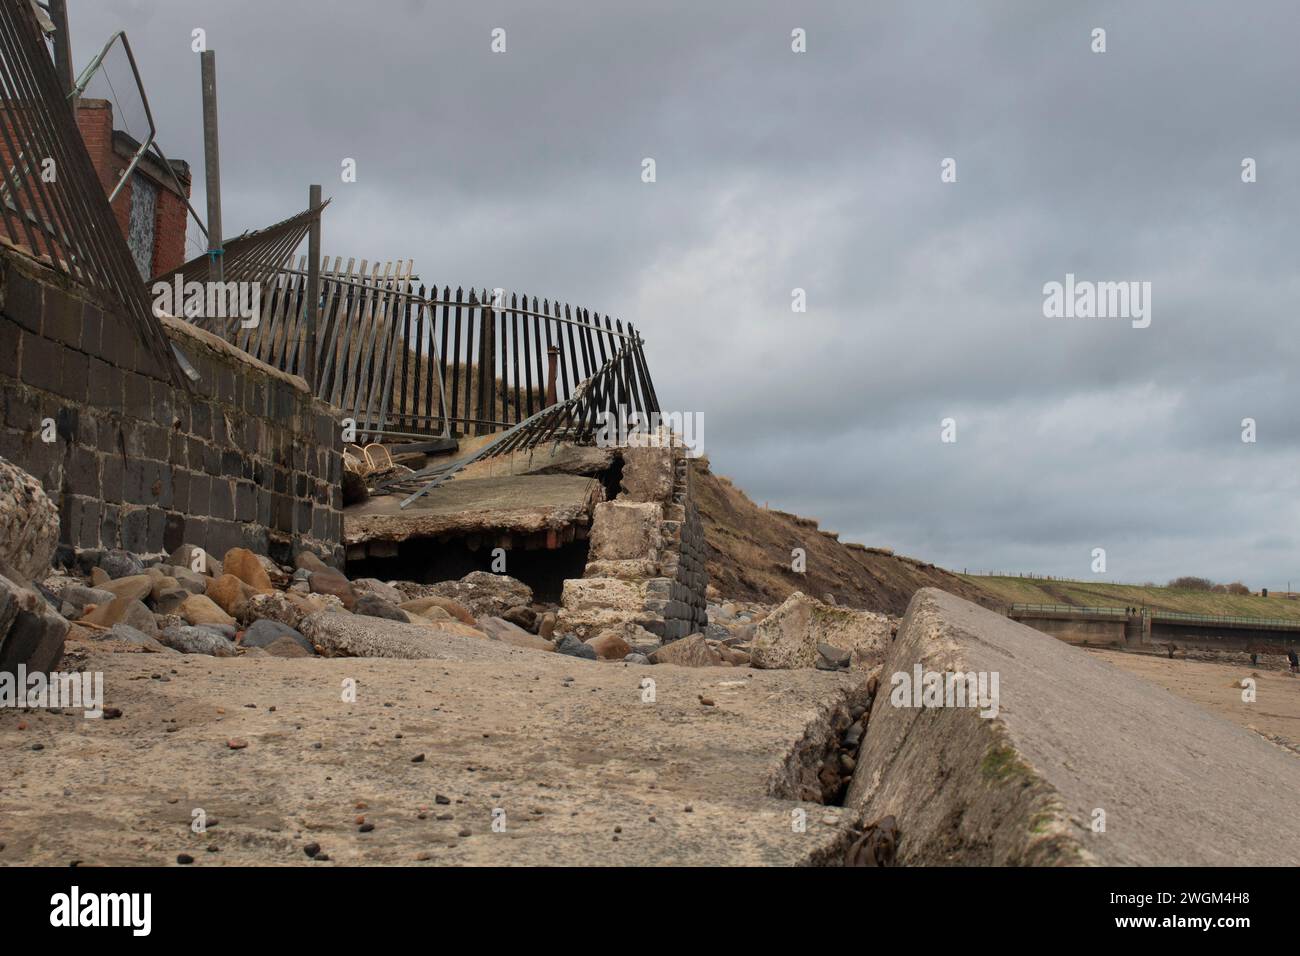 Sentier est tombé sur la plage dans le cadre de l'érosion côtière sur la plage de Tynemouth, Angleterre Royaume-Uni Banque D'Images